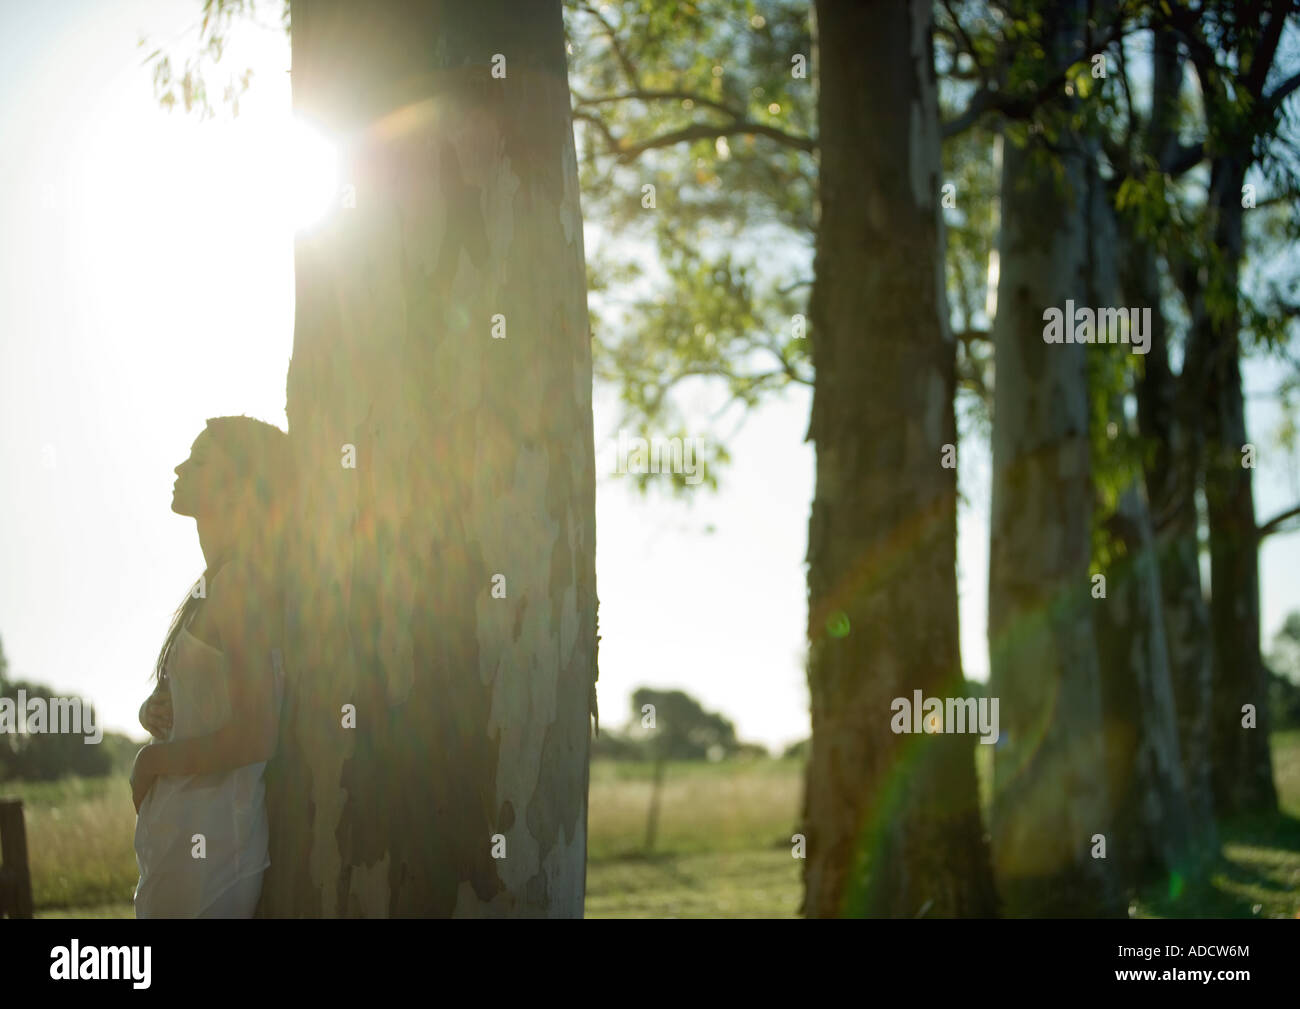 Frau, Baum, Sonne im Hintergrund gelehnt Stockfoto